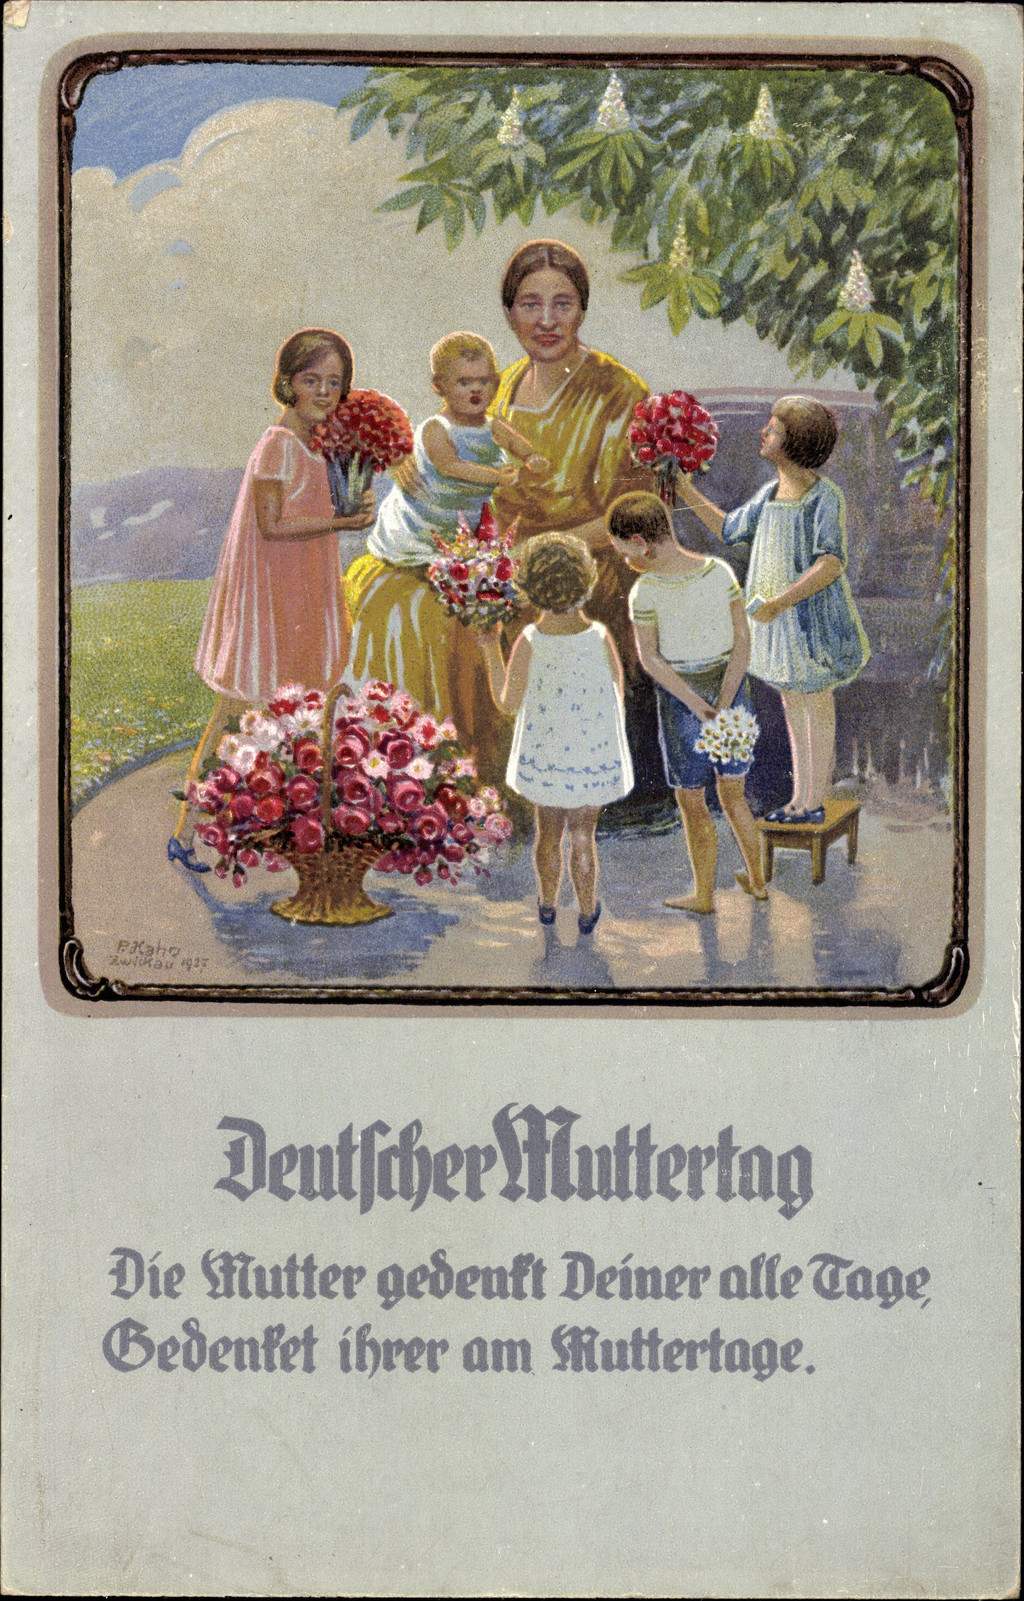 Historische Karte mit einer Mutter und mehreren Kindern mit Blumensträußen